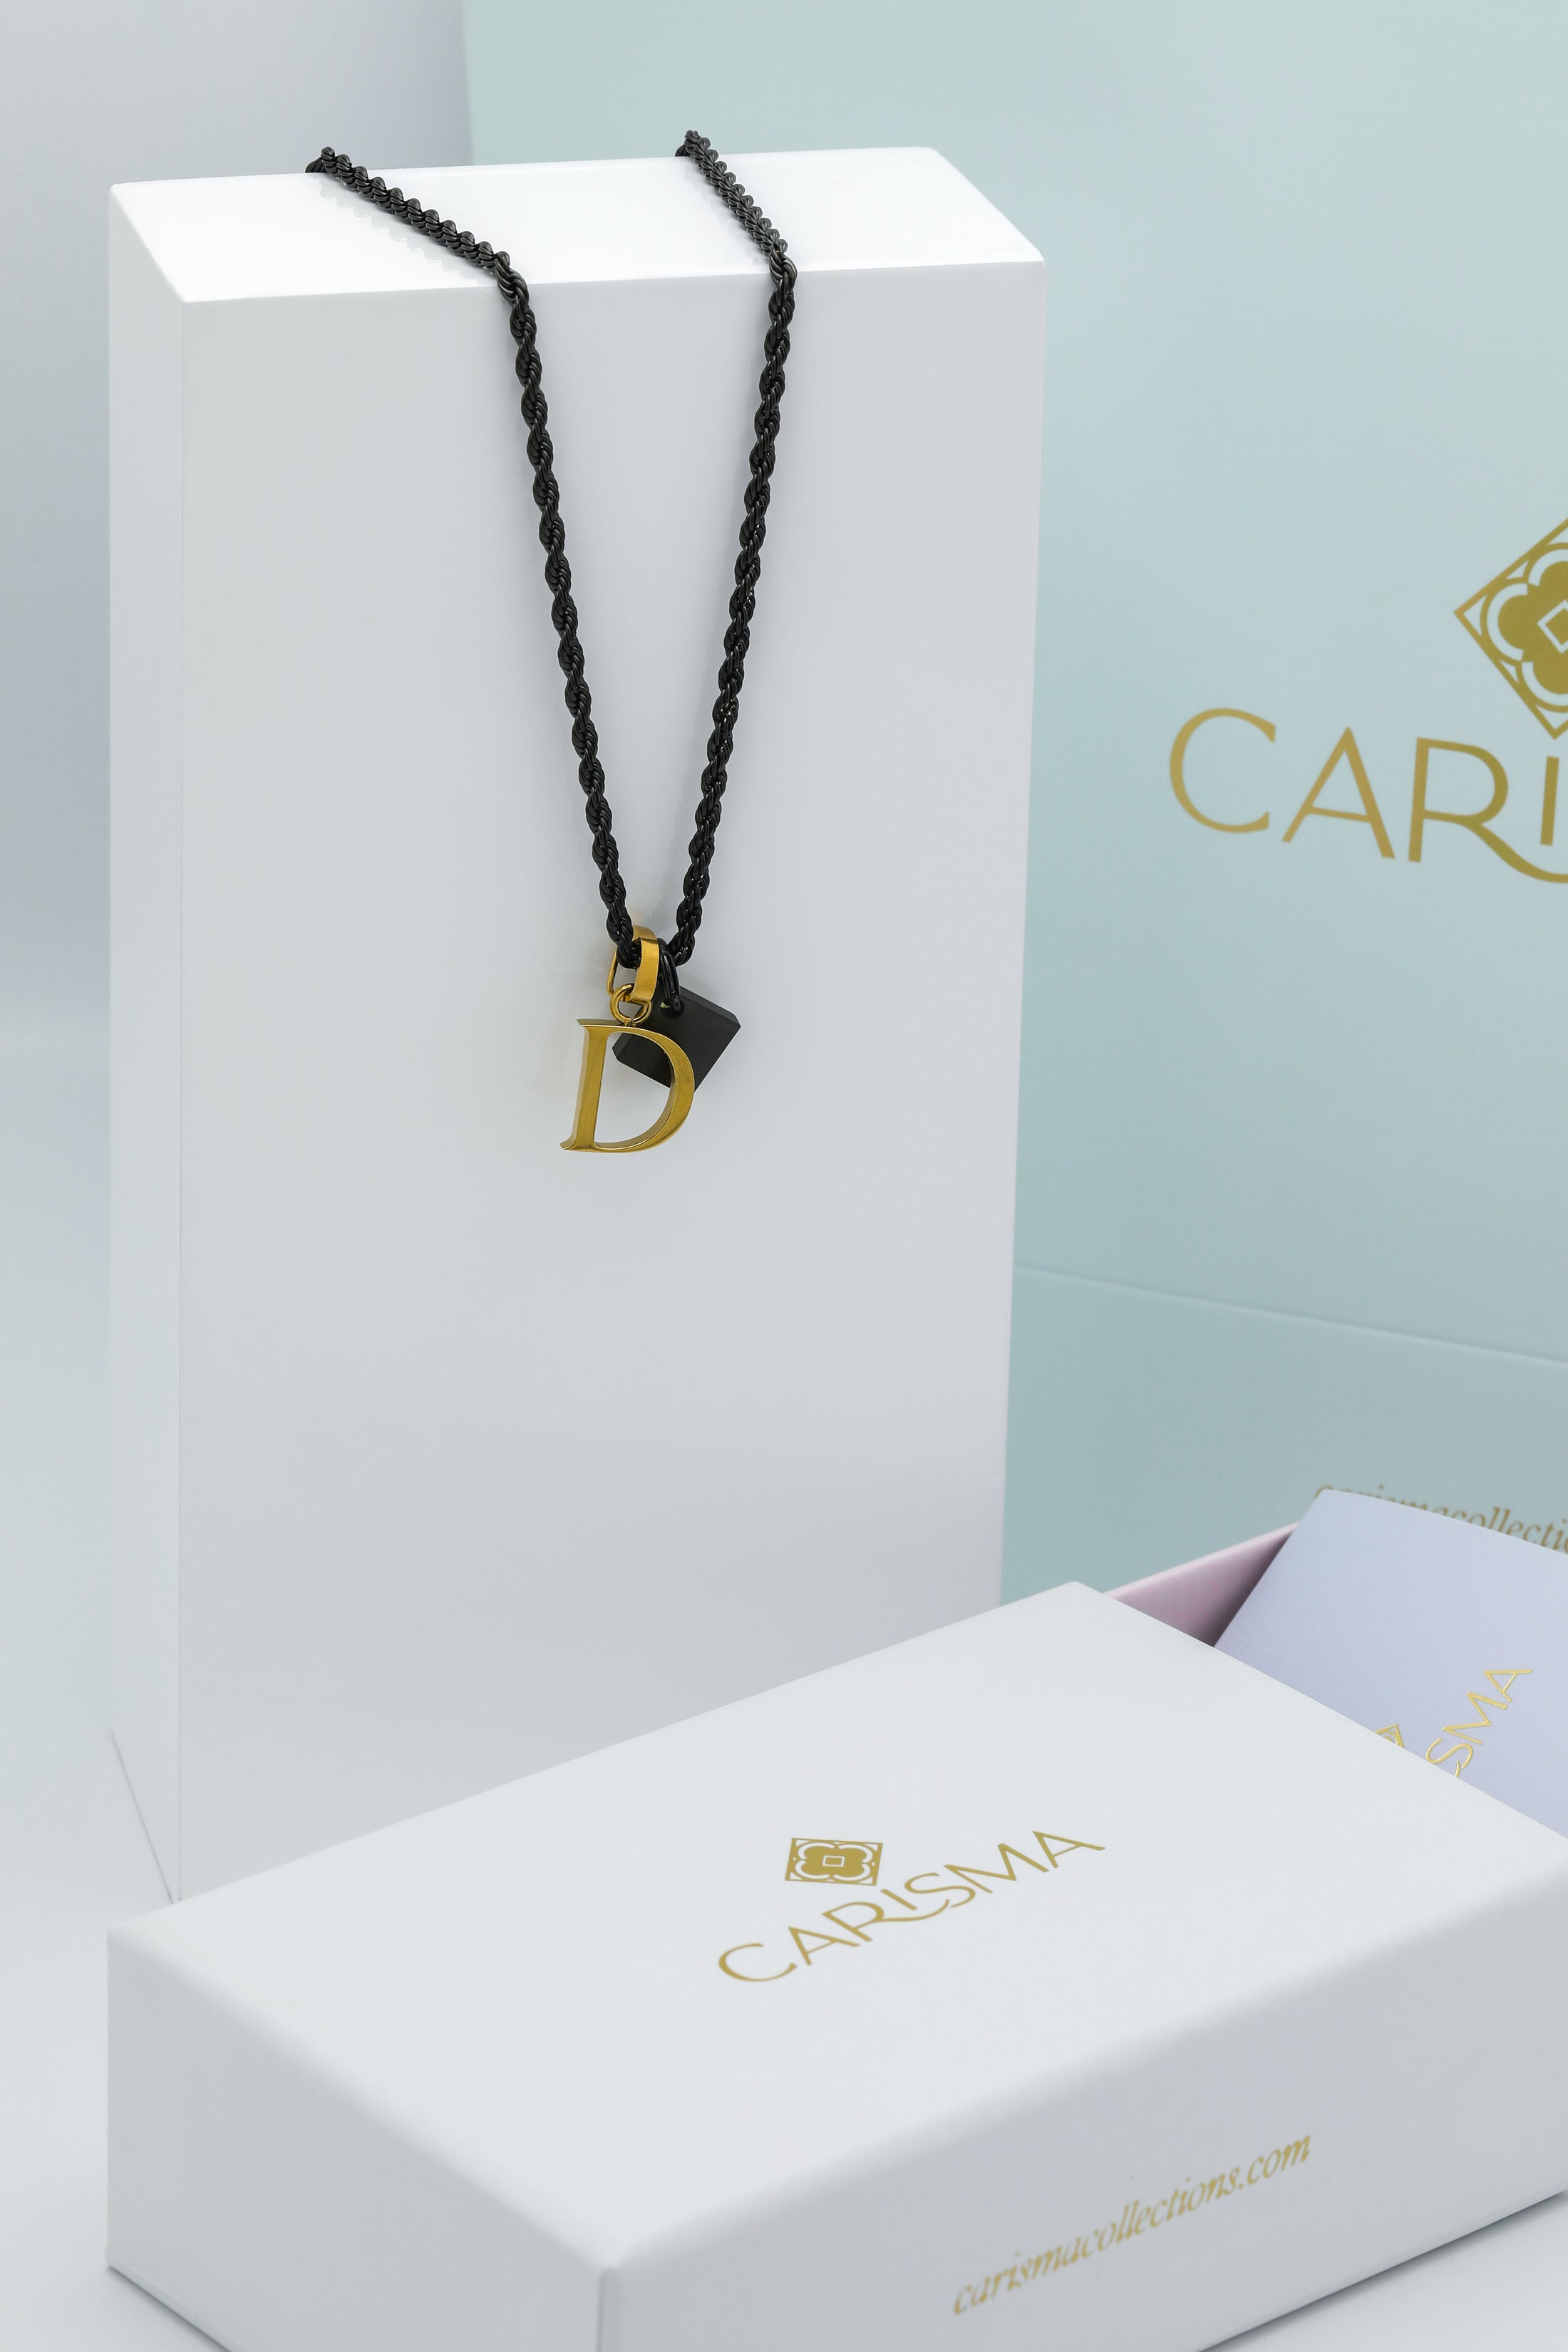 Black Square Pendant &amp; Carisma Letter Gift Set